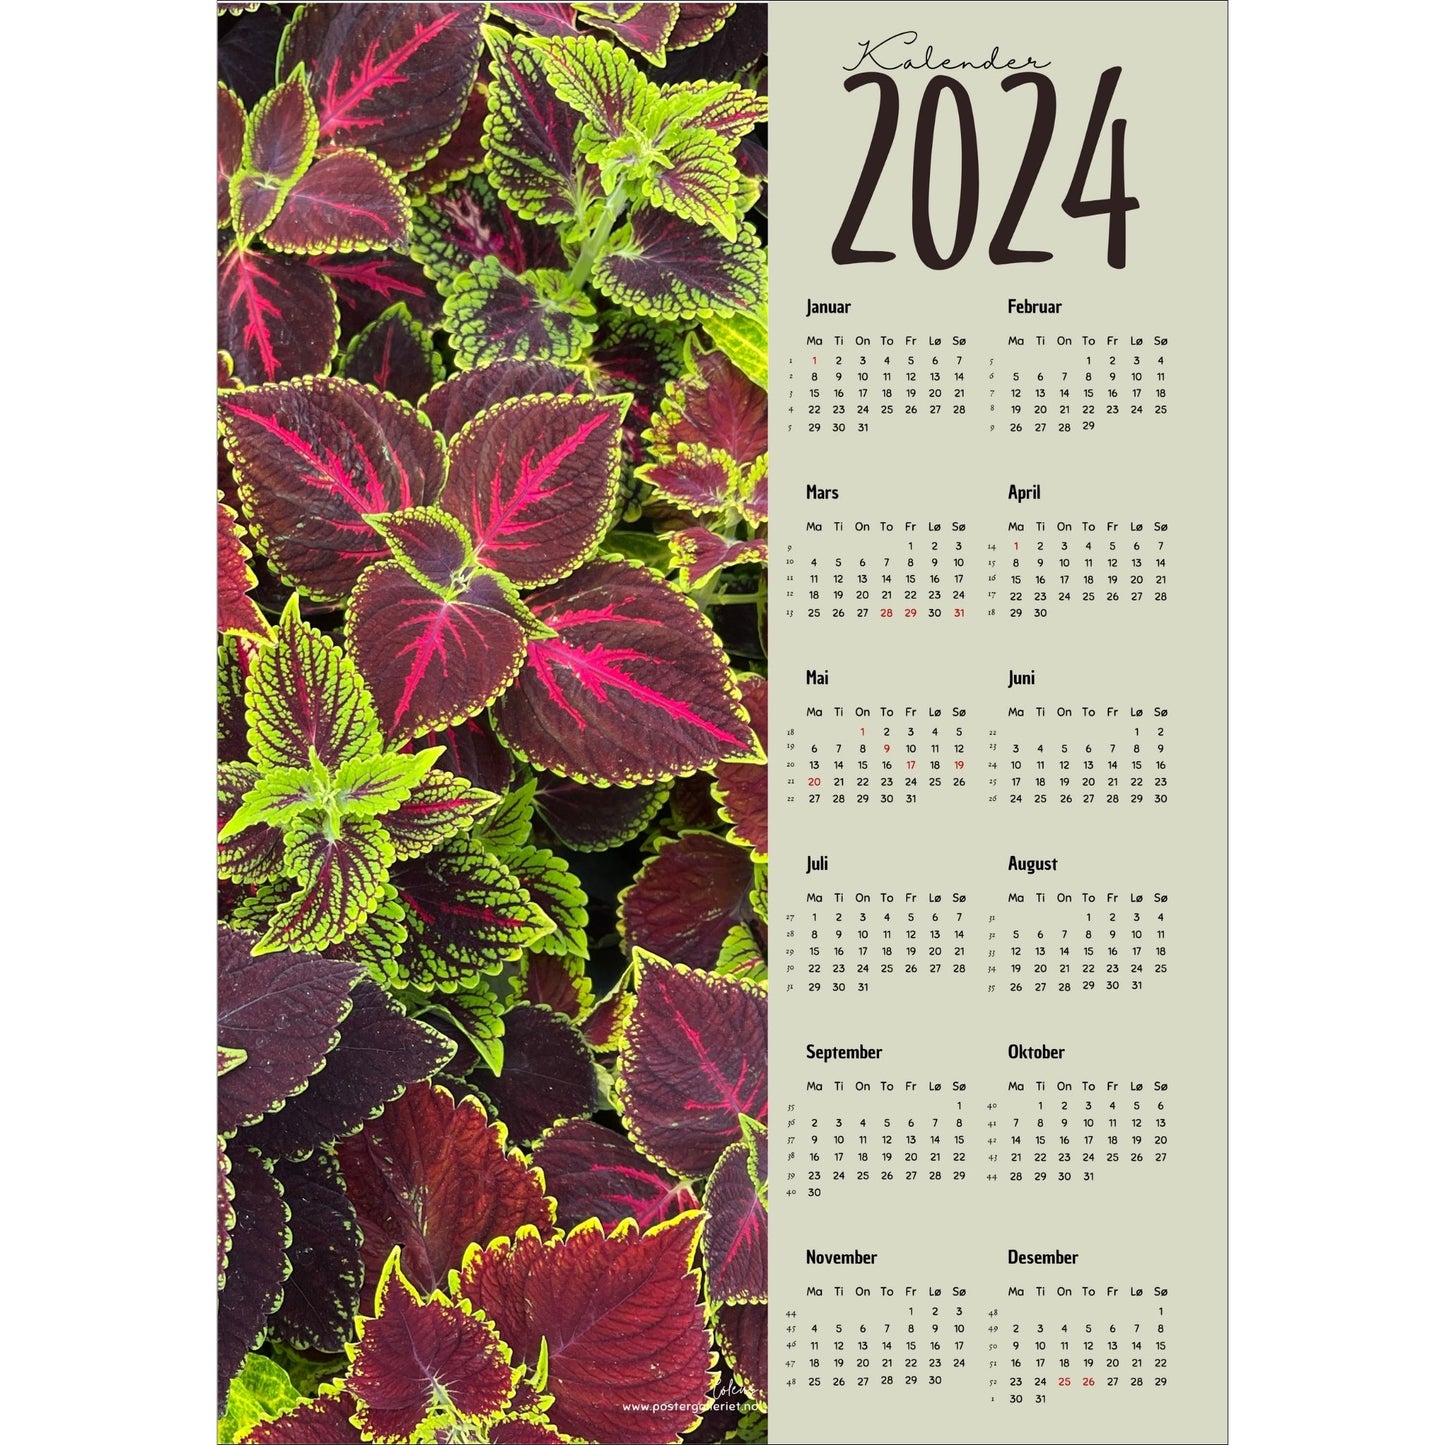 Kalender 2024 i grafisk print med fotomotiv. Halve vertikale side har et fotomotiv av en Coleus plante. Den andre halvdelen er påført 12 måneder med ukenummer og anmerket høytidsdager.